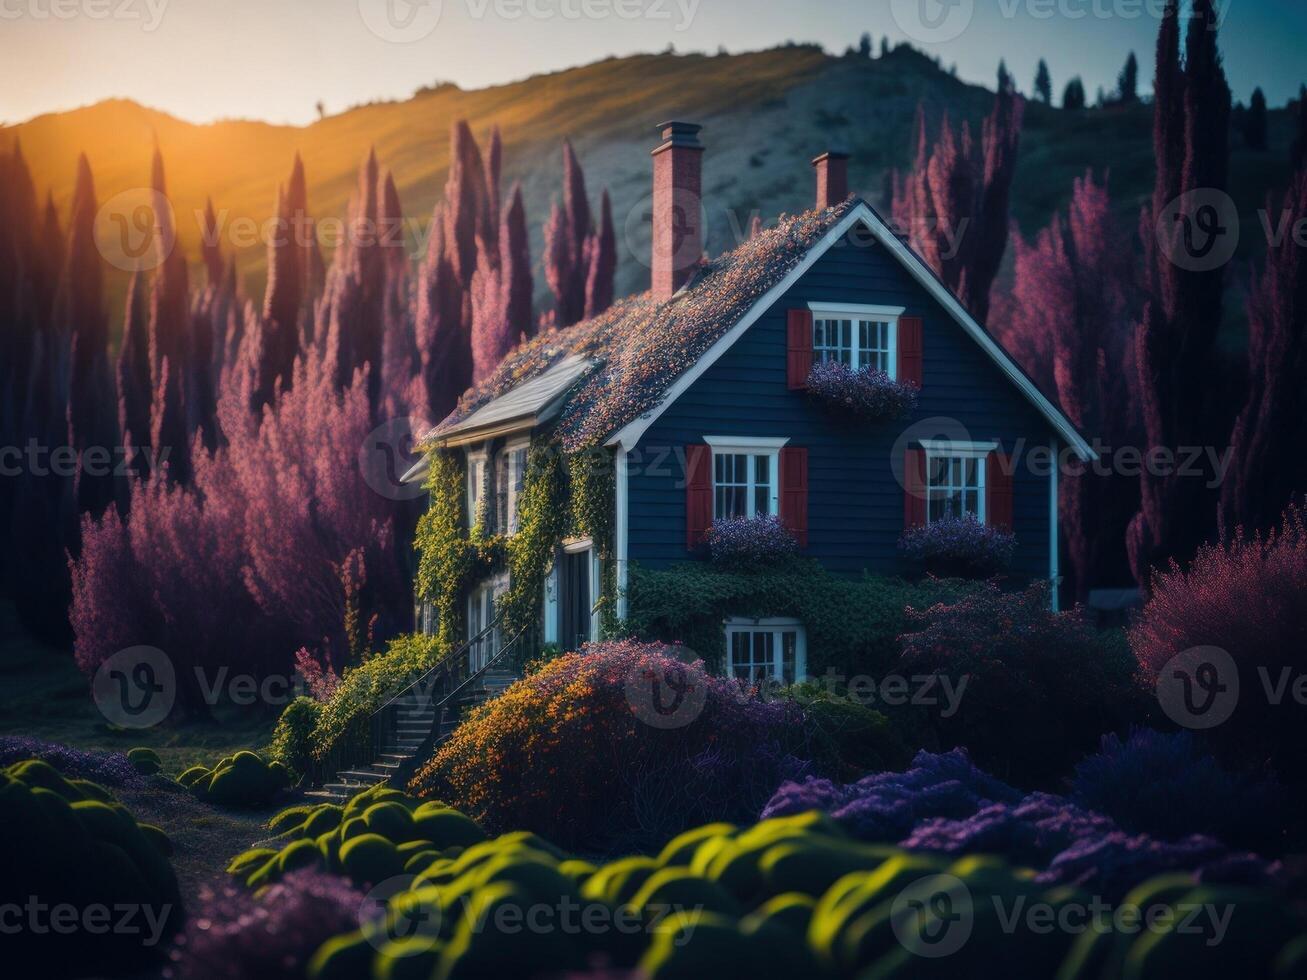 Dreamscape fantasy colorful house. photo